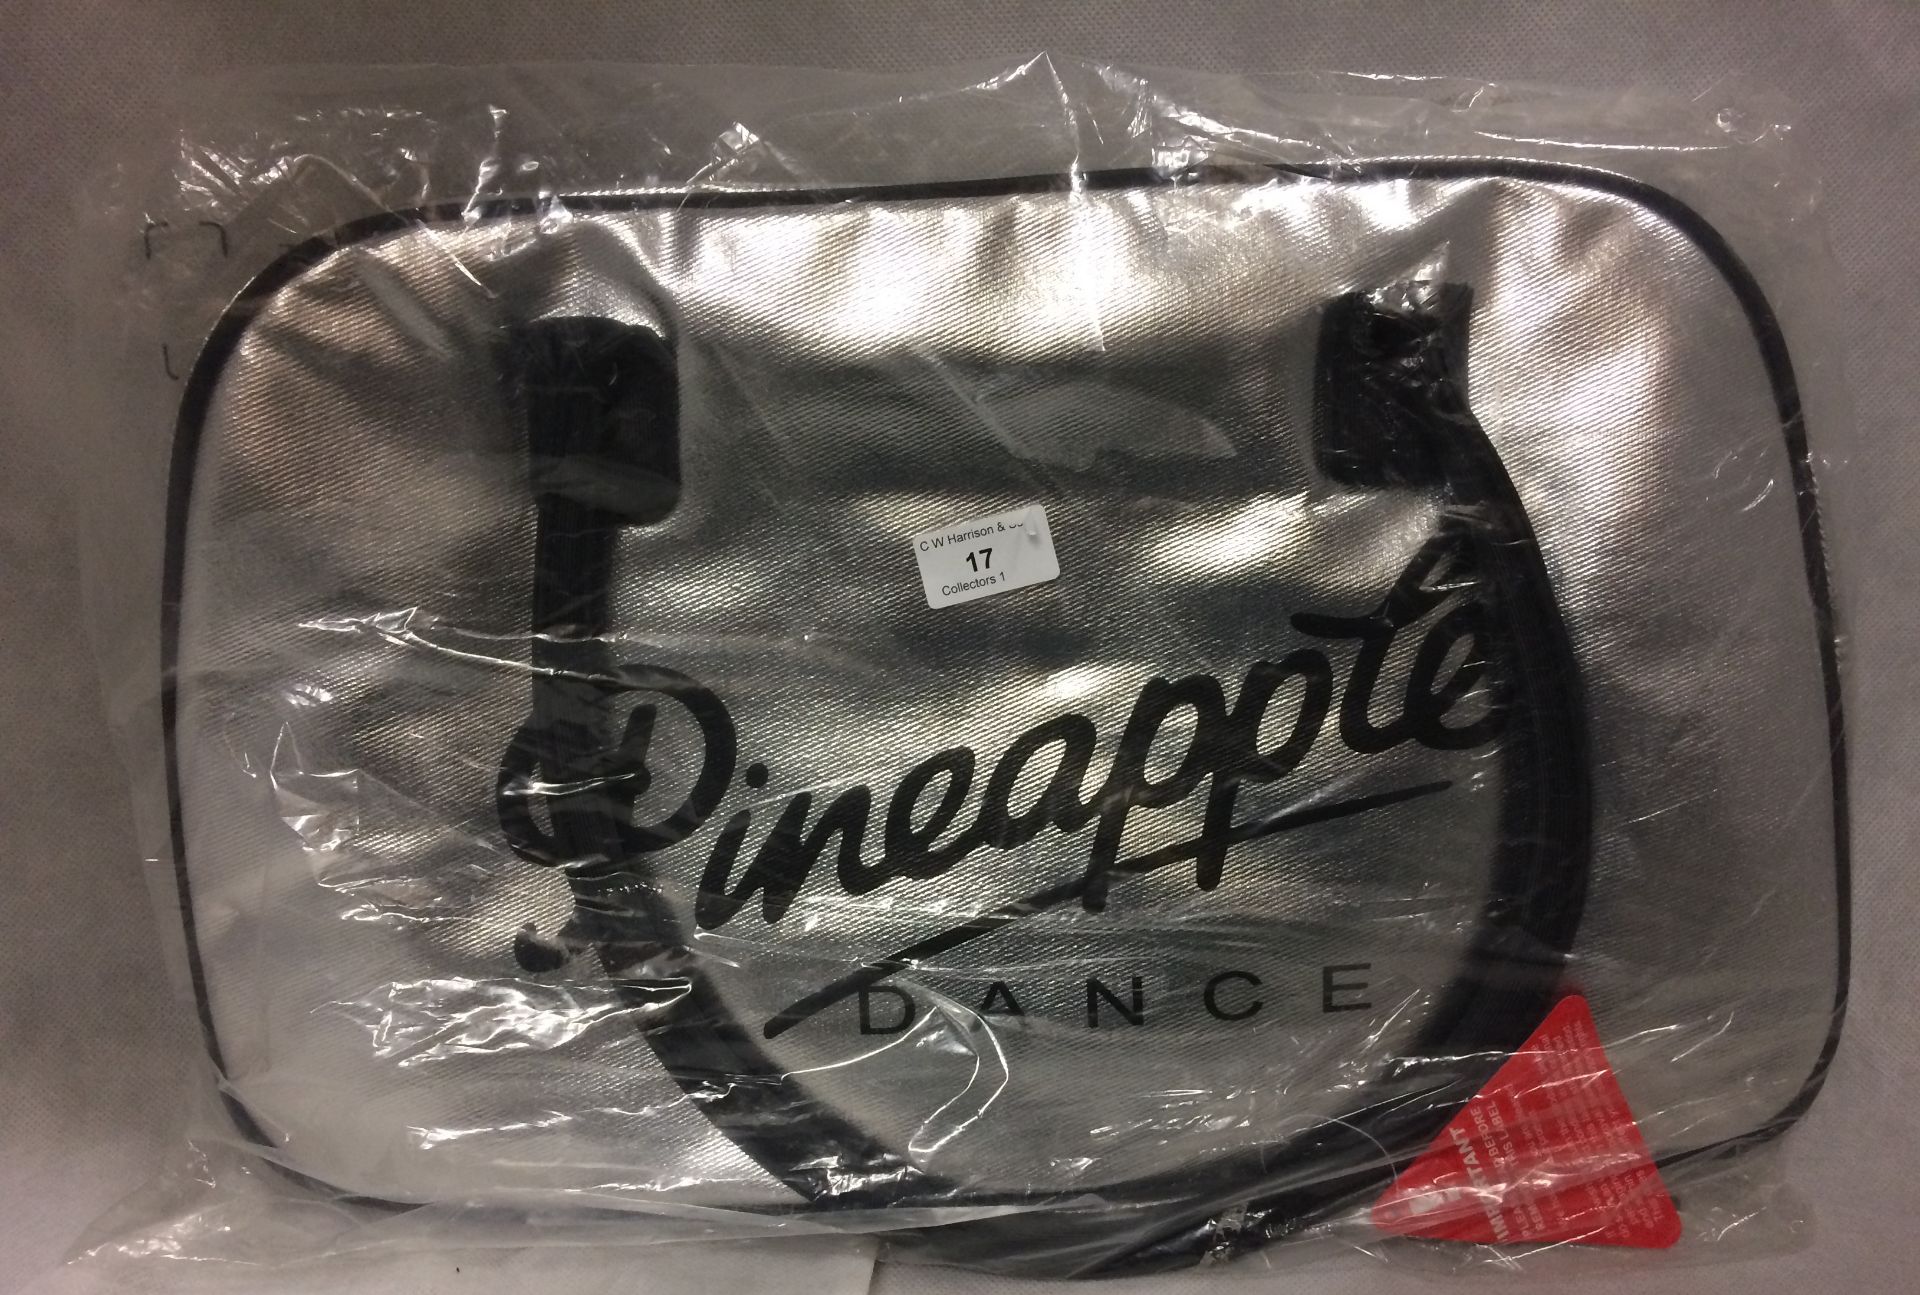 Pineapple Dance Studio retro kit bag in silver